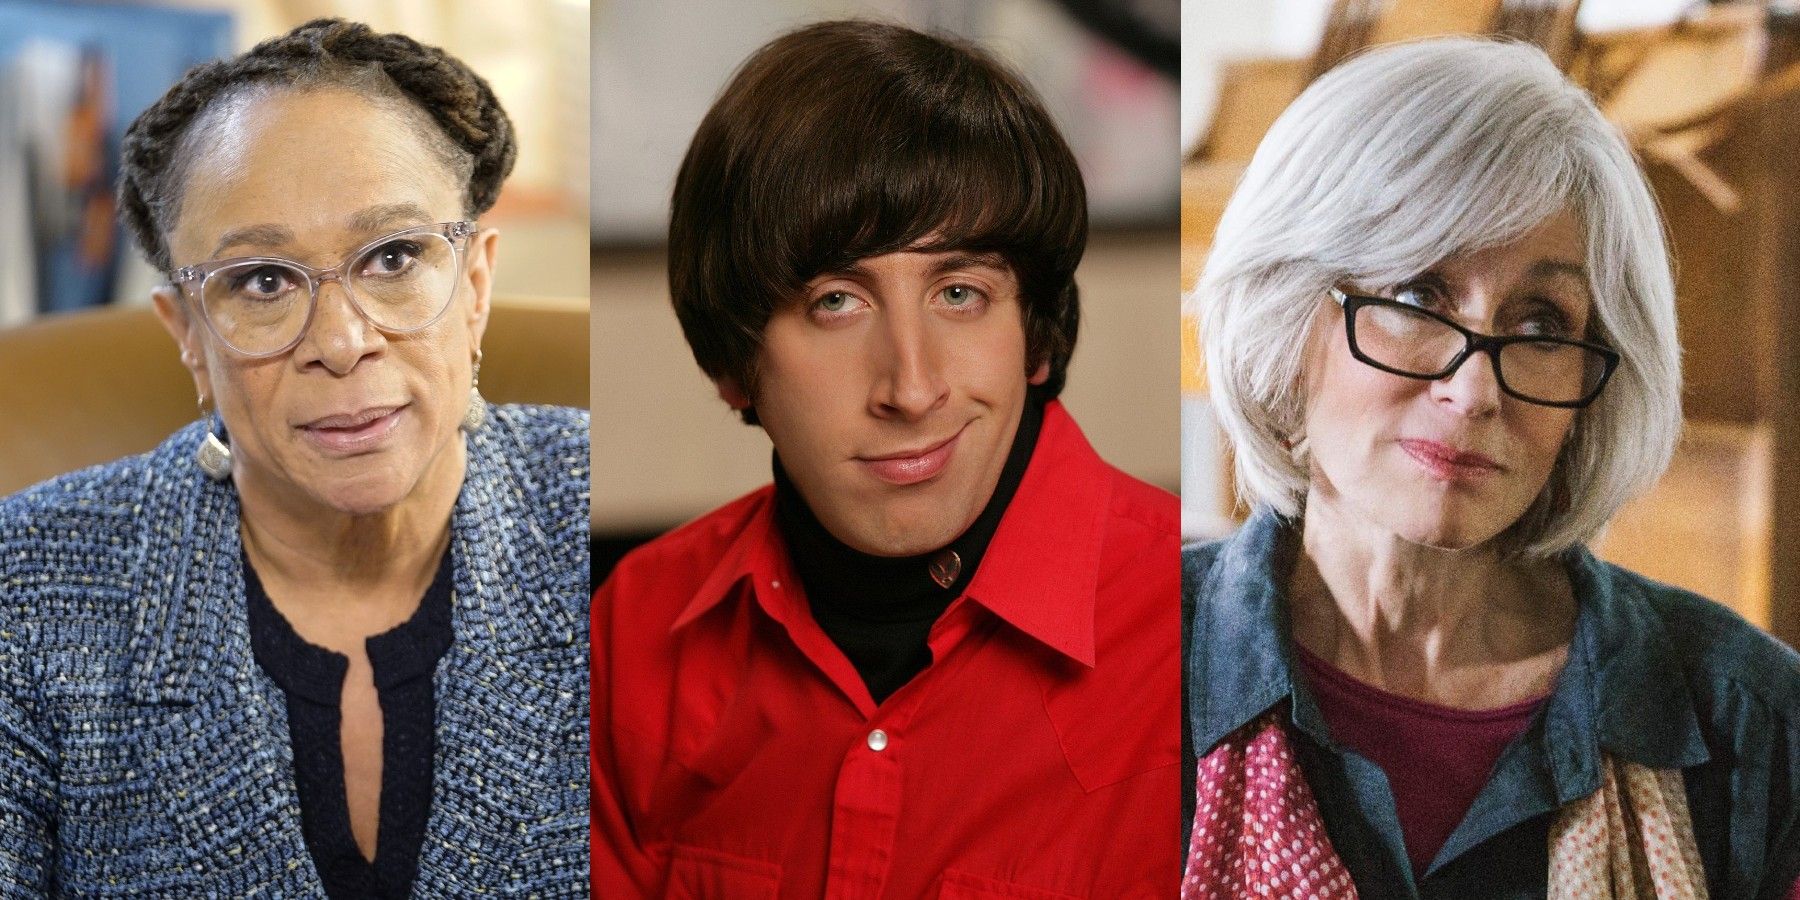 Big Bang Theory Star Simon Helberg Joins Rian Johnson’s Poker Face